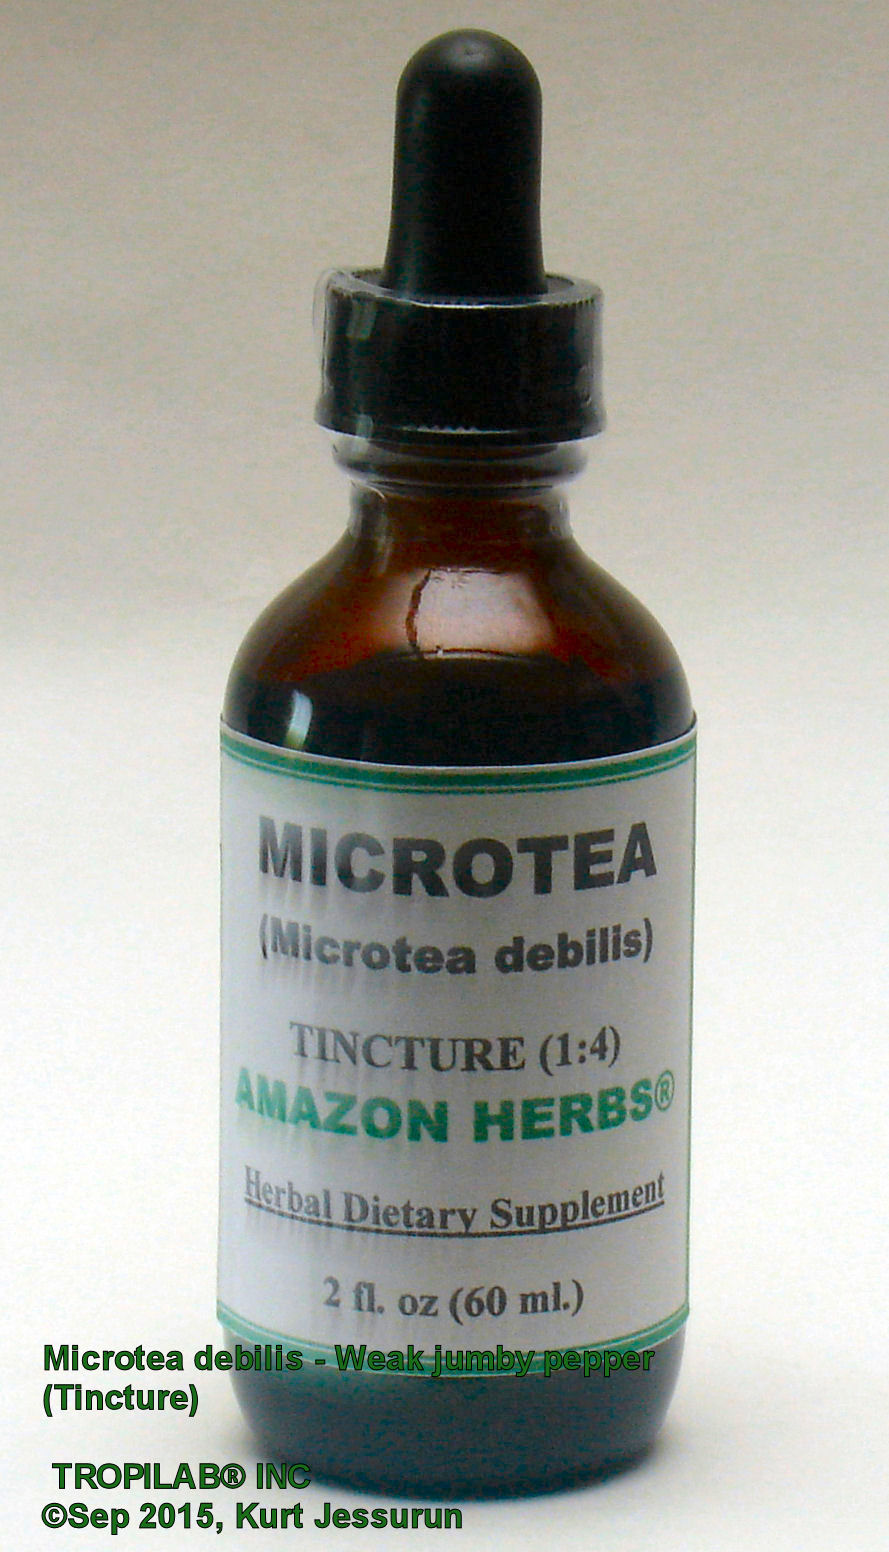 Microtea debilis tincture